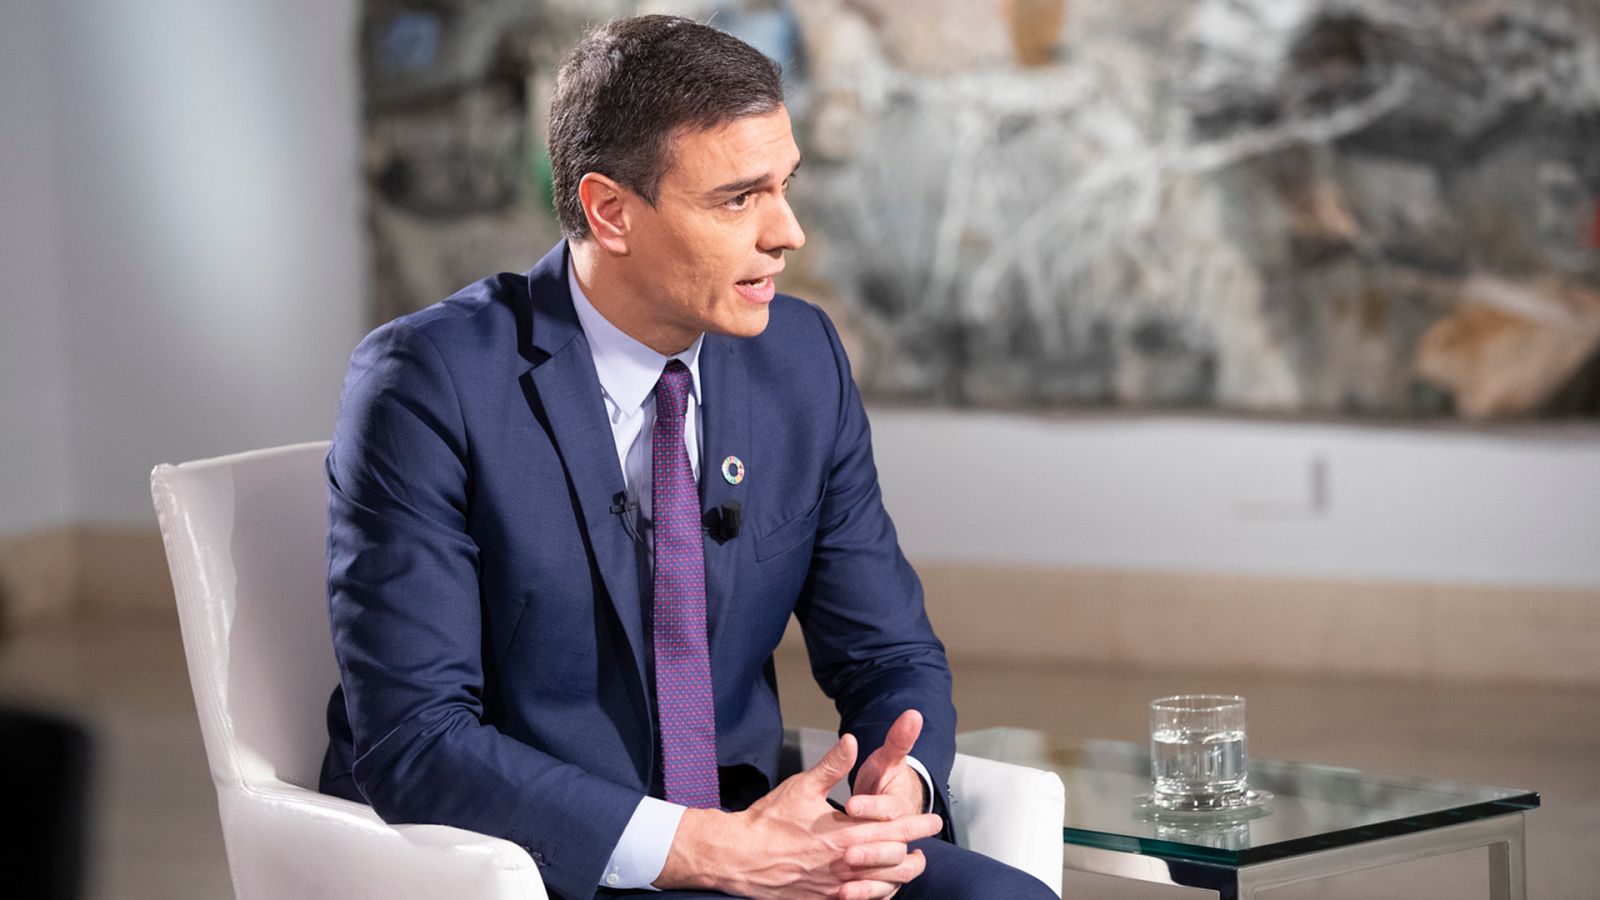 Entrevista | Sánchez defiende la propuesta de Delgado como fiscal general: "Su currículum es impecable"